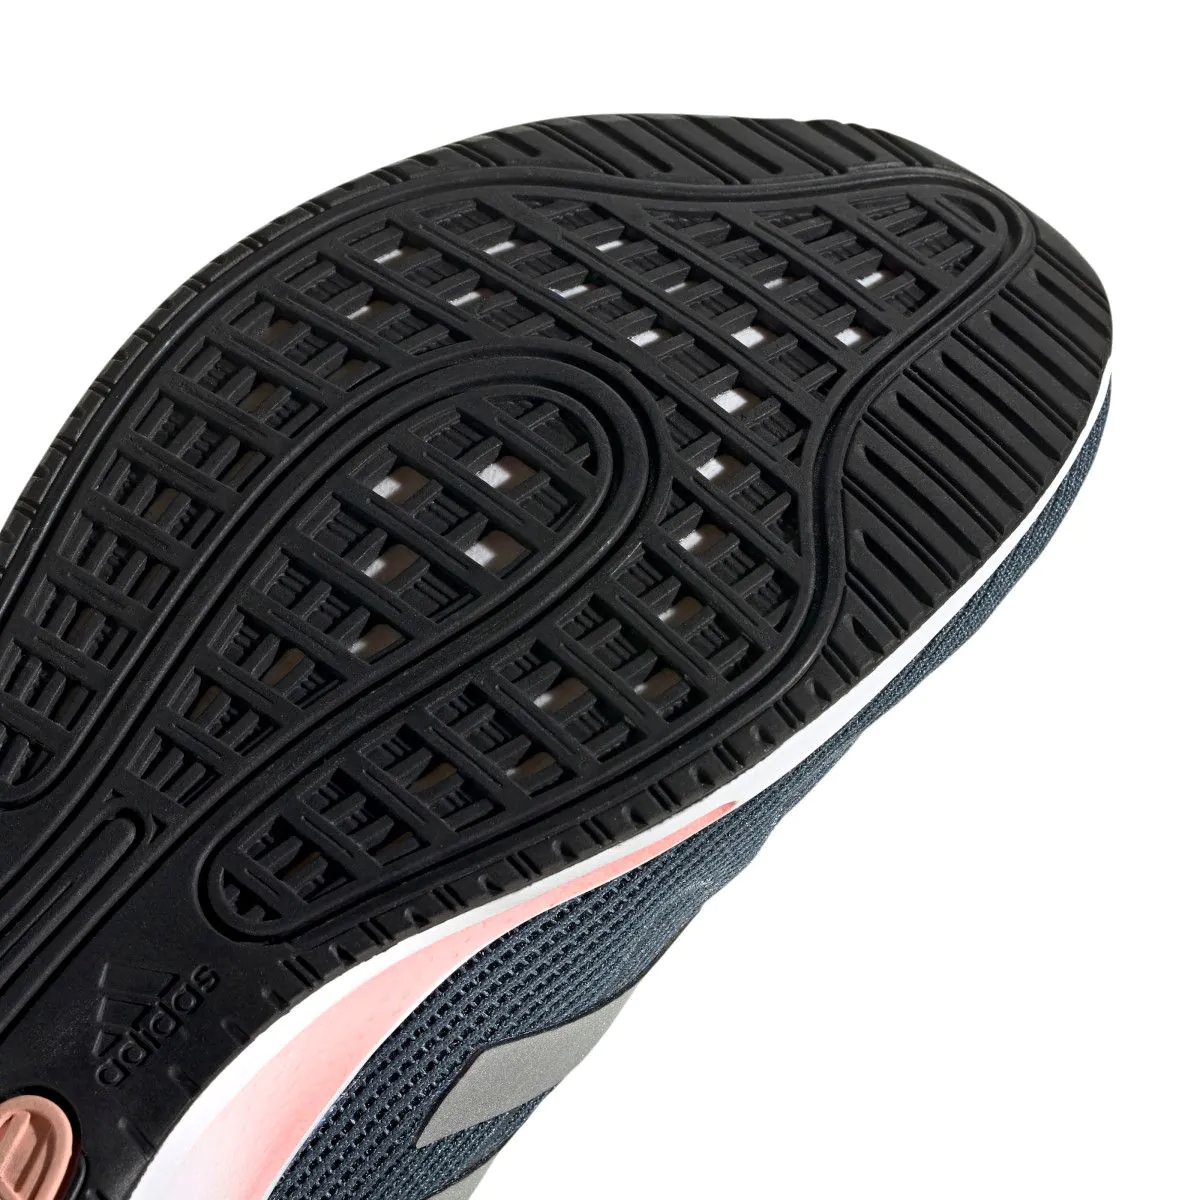 adidas Galaxar Run Women's Running Shoes EG5412